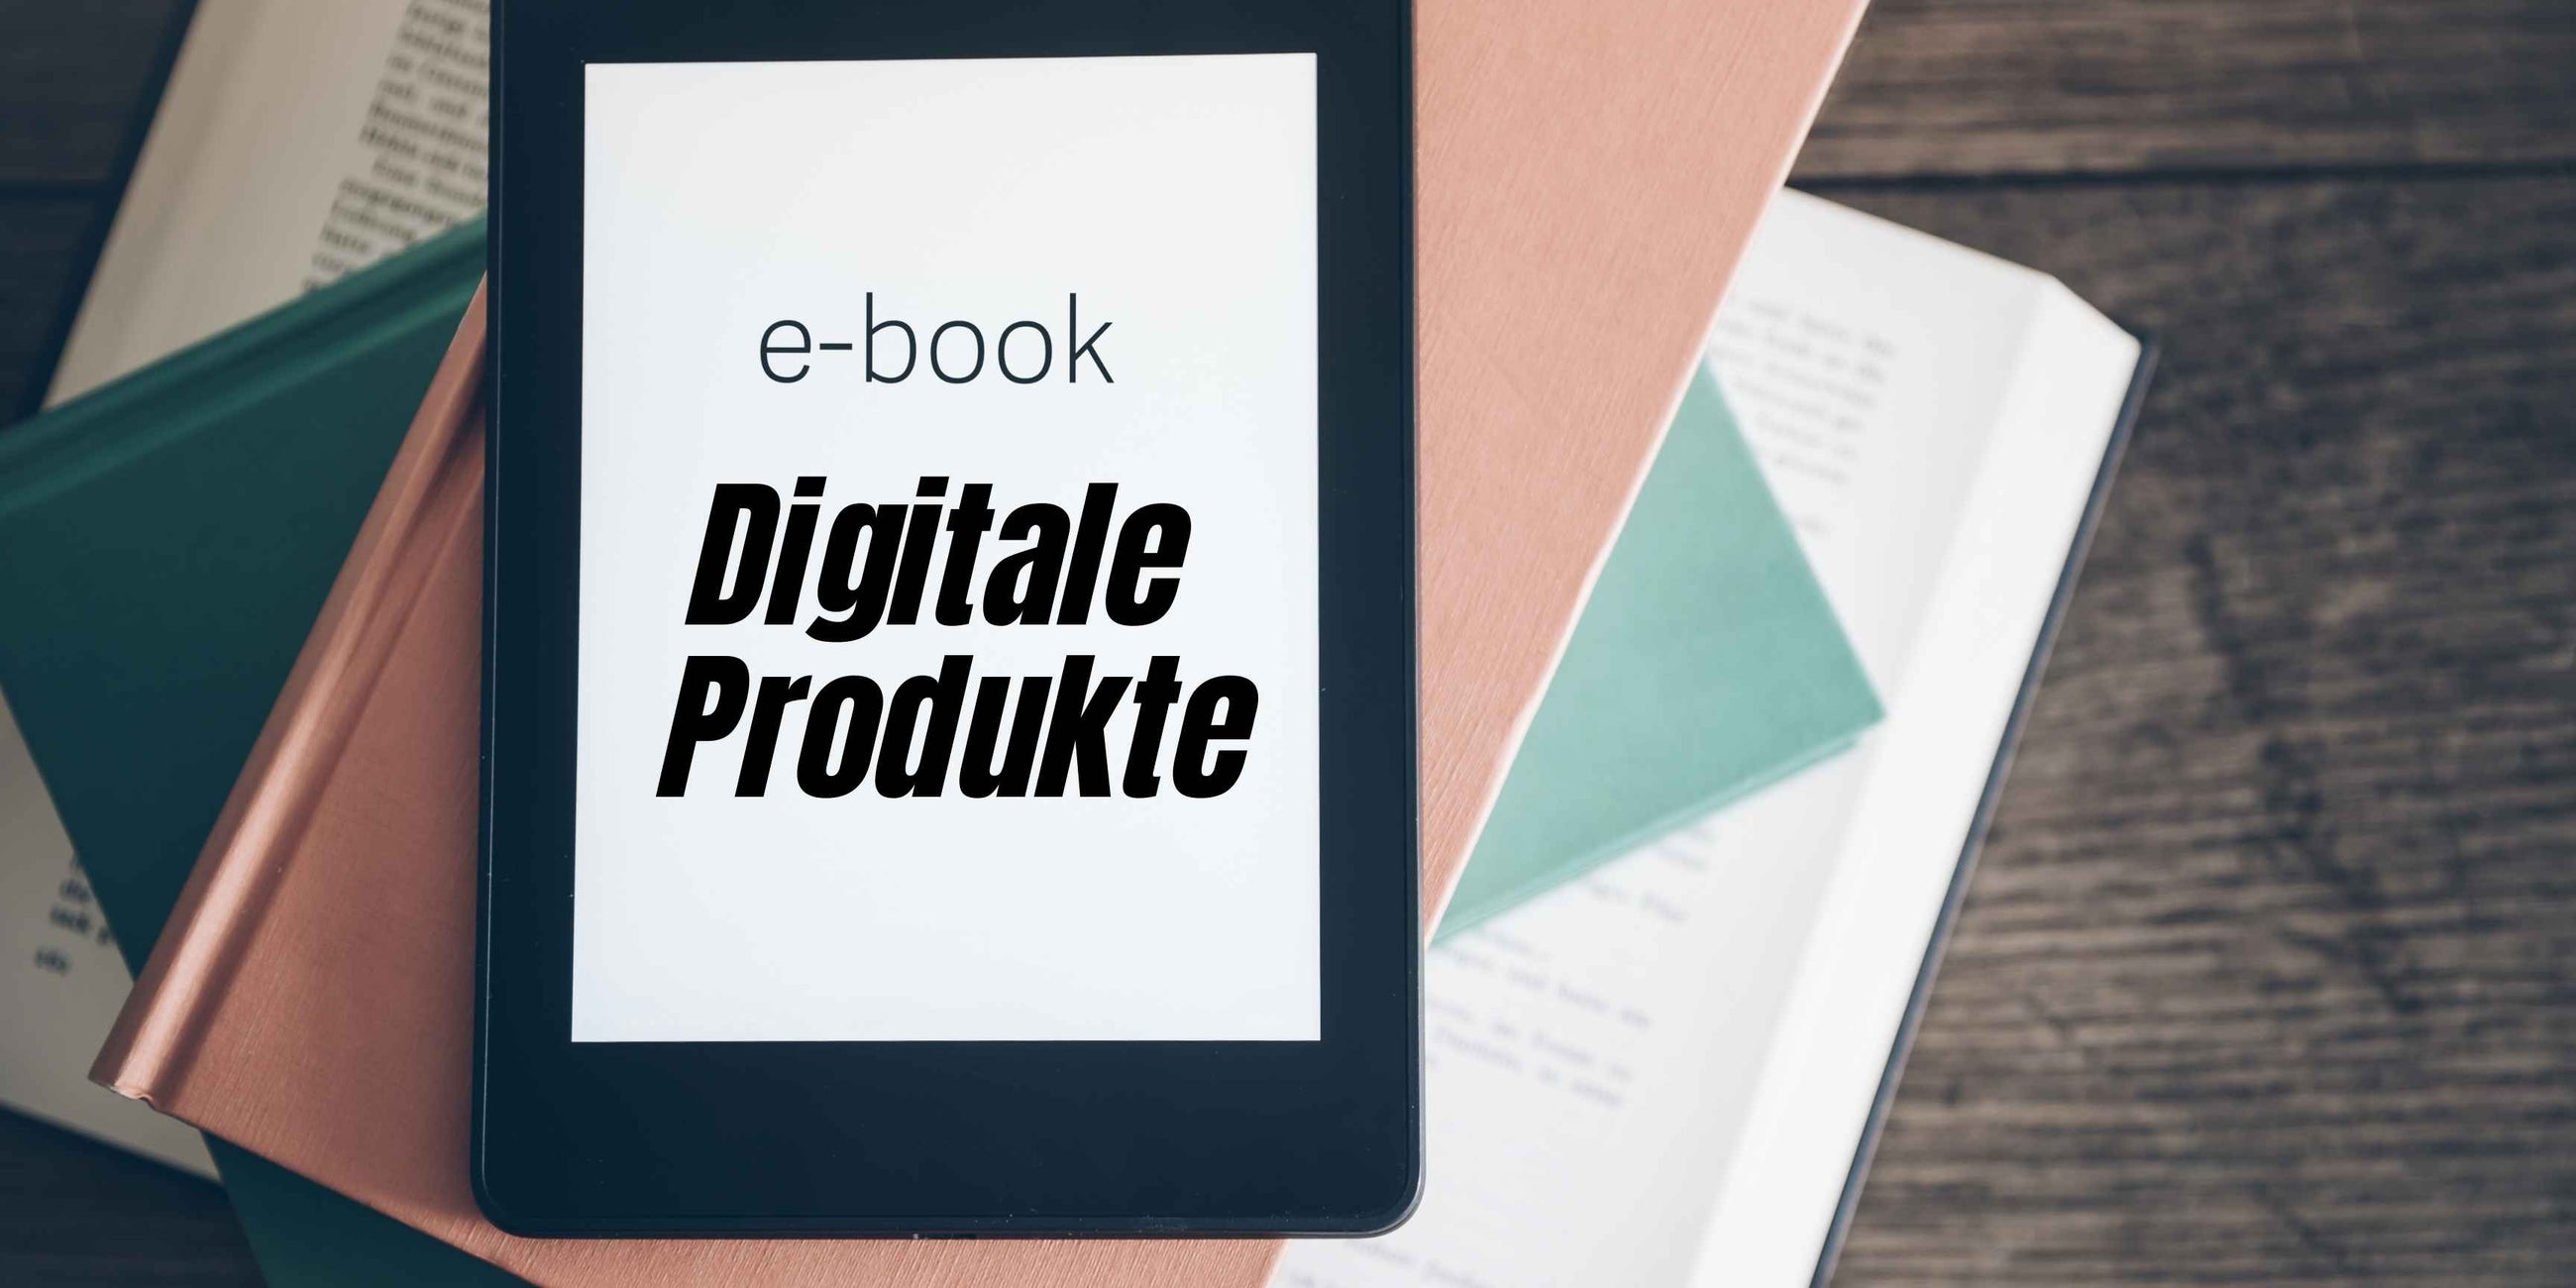 Digitale Produkte